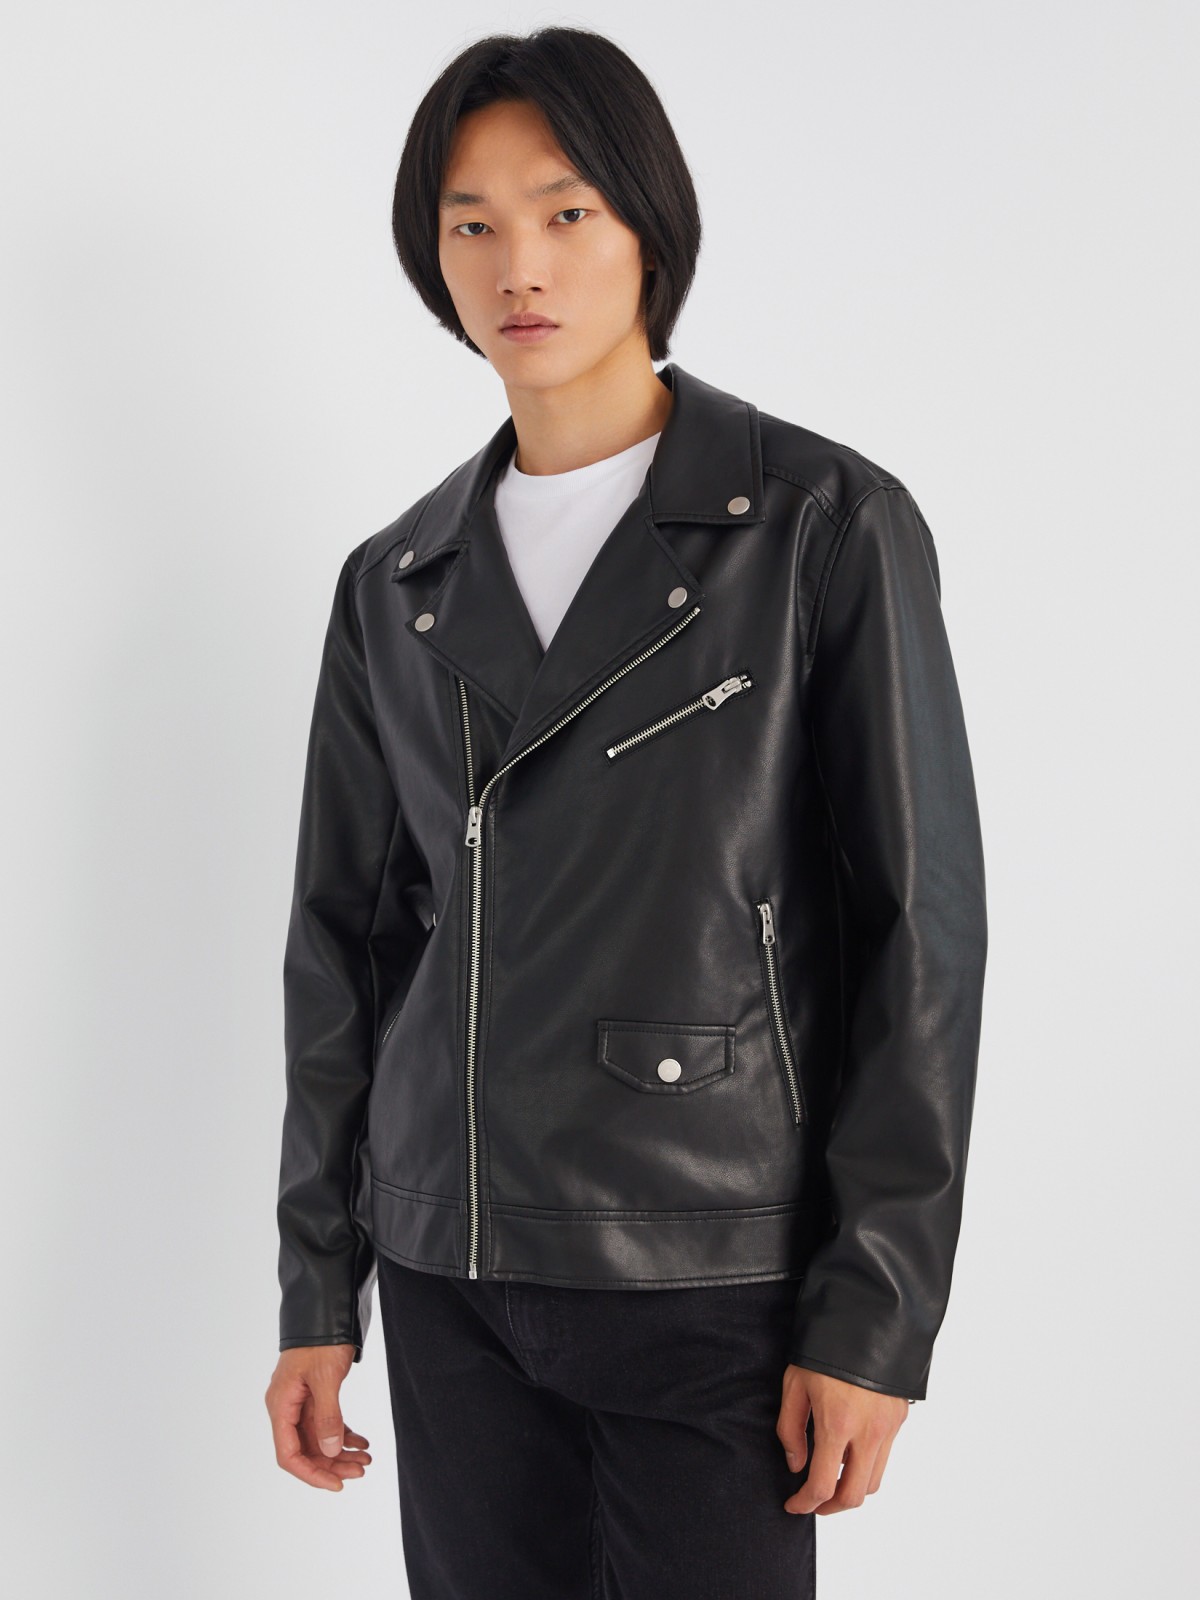 Кожаная куртка-косуха из экокожи без утеплителя zolla 013325650034, цвет черный, размер S - фото 4